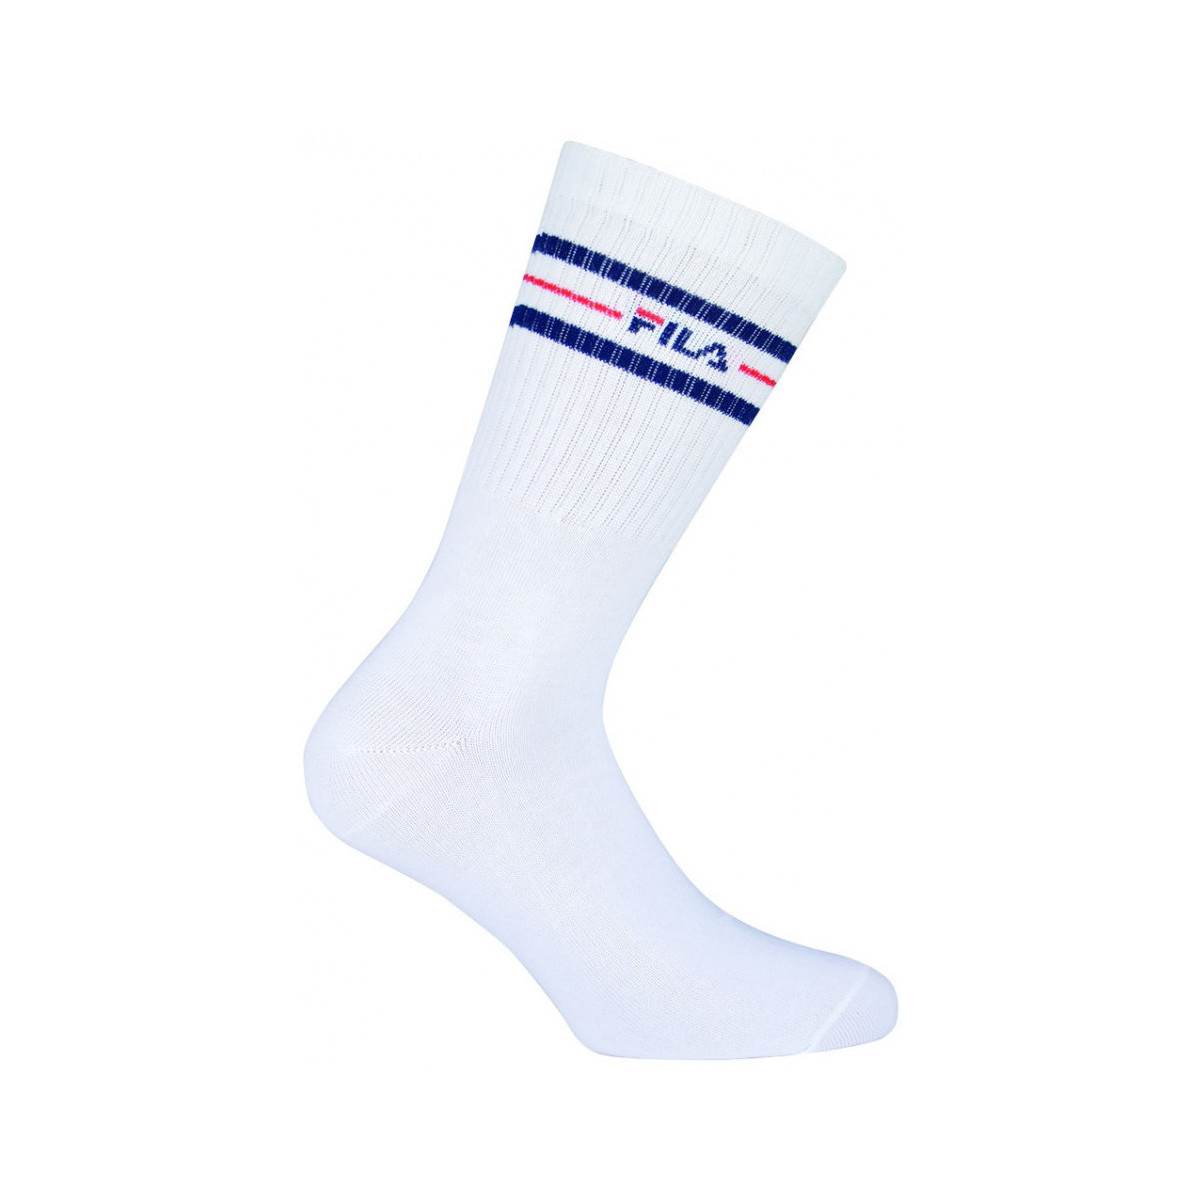 Sukat Fila Normal socks manfila3 pairs per pack 39 / 42